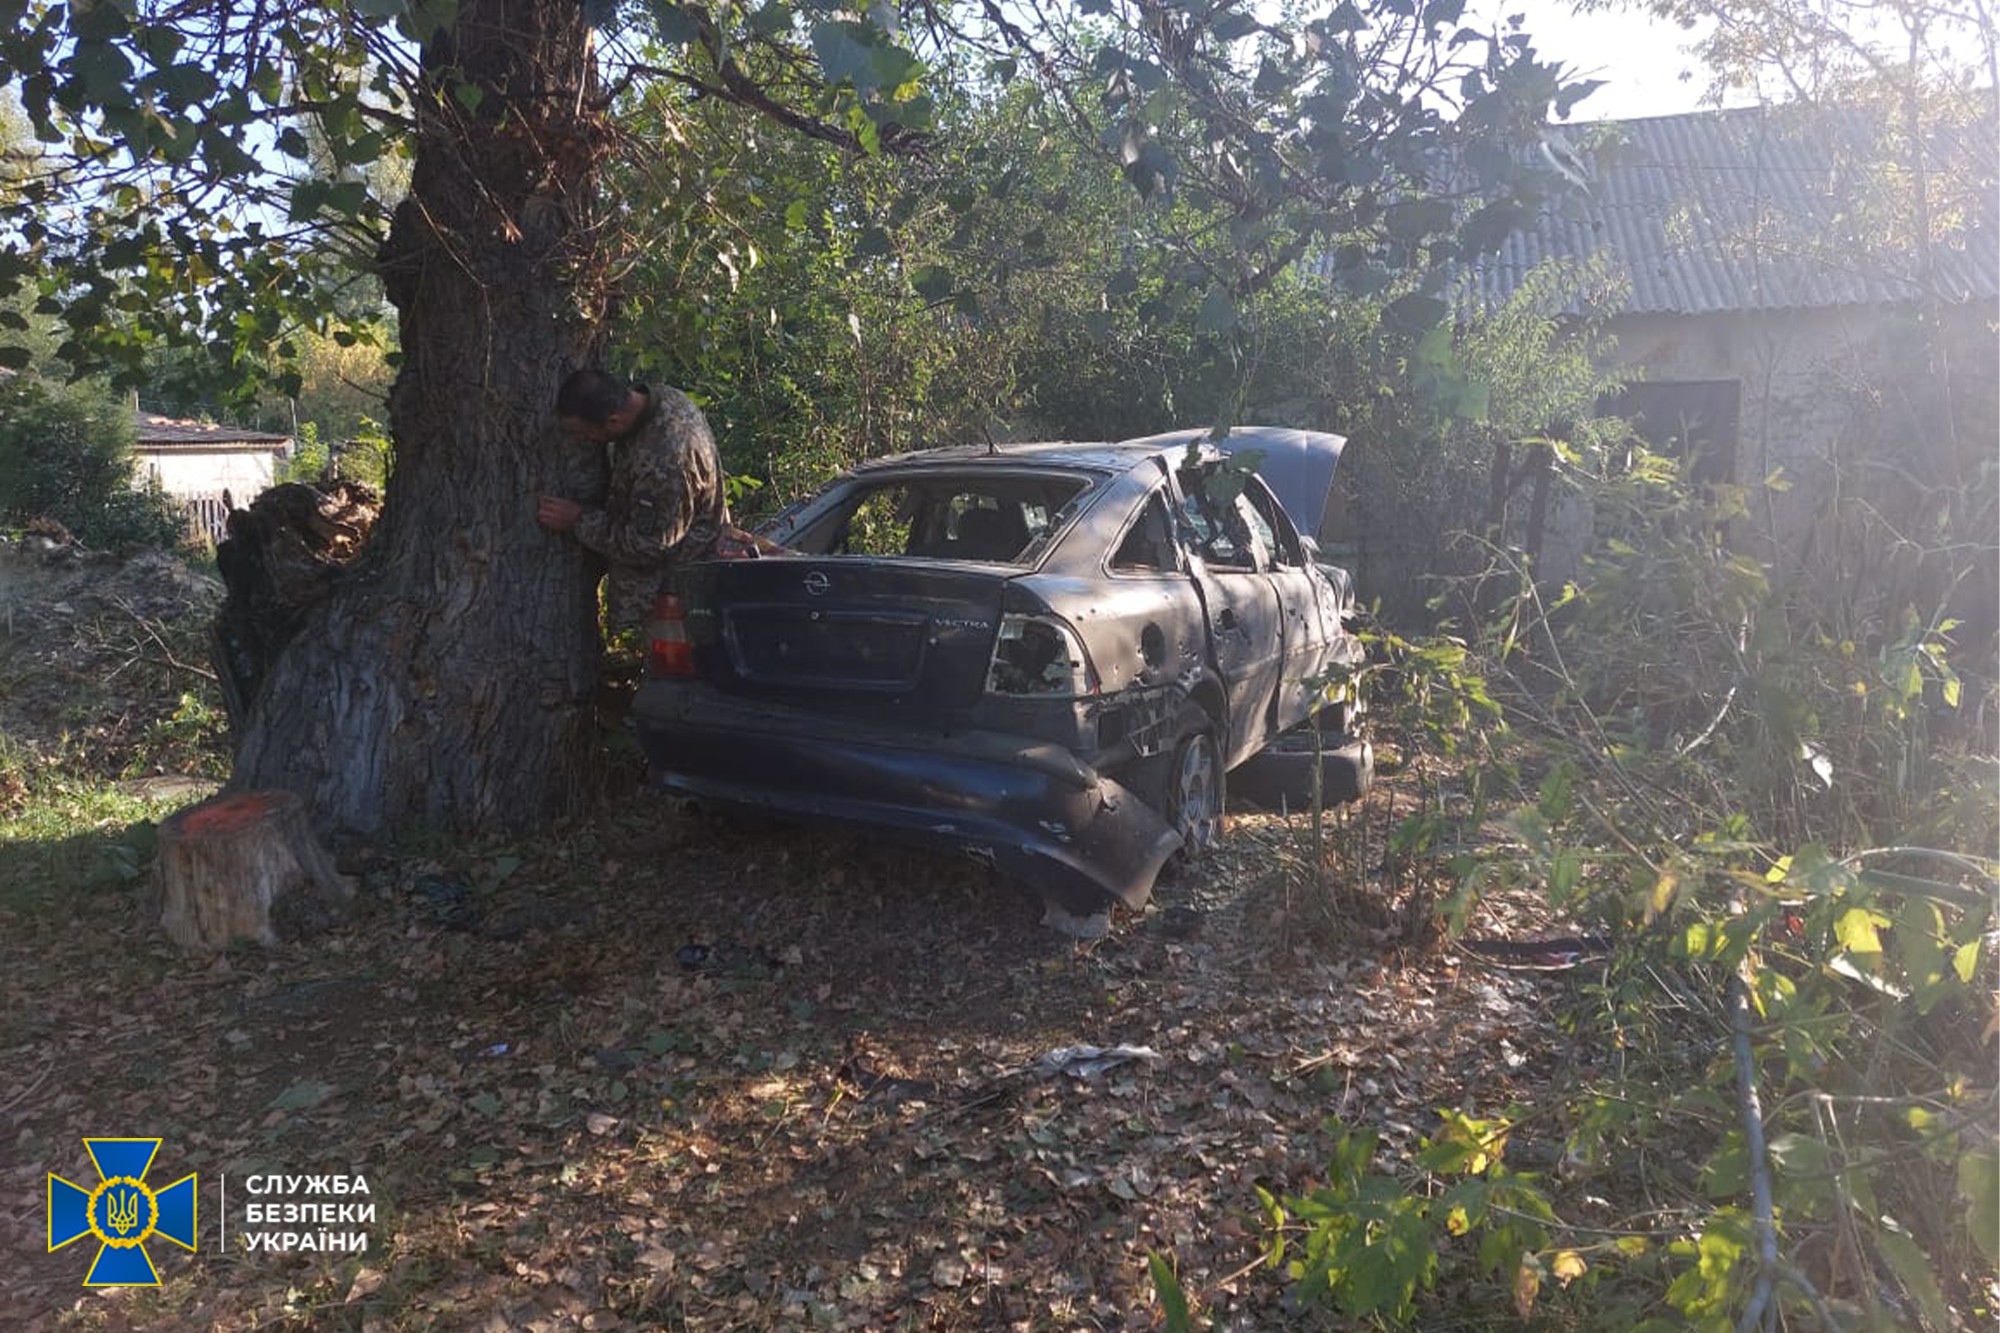 Следственную группу СБУ в Трехизбенке обстреляли из минометов боевики: фото